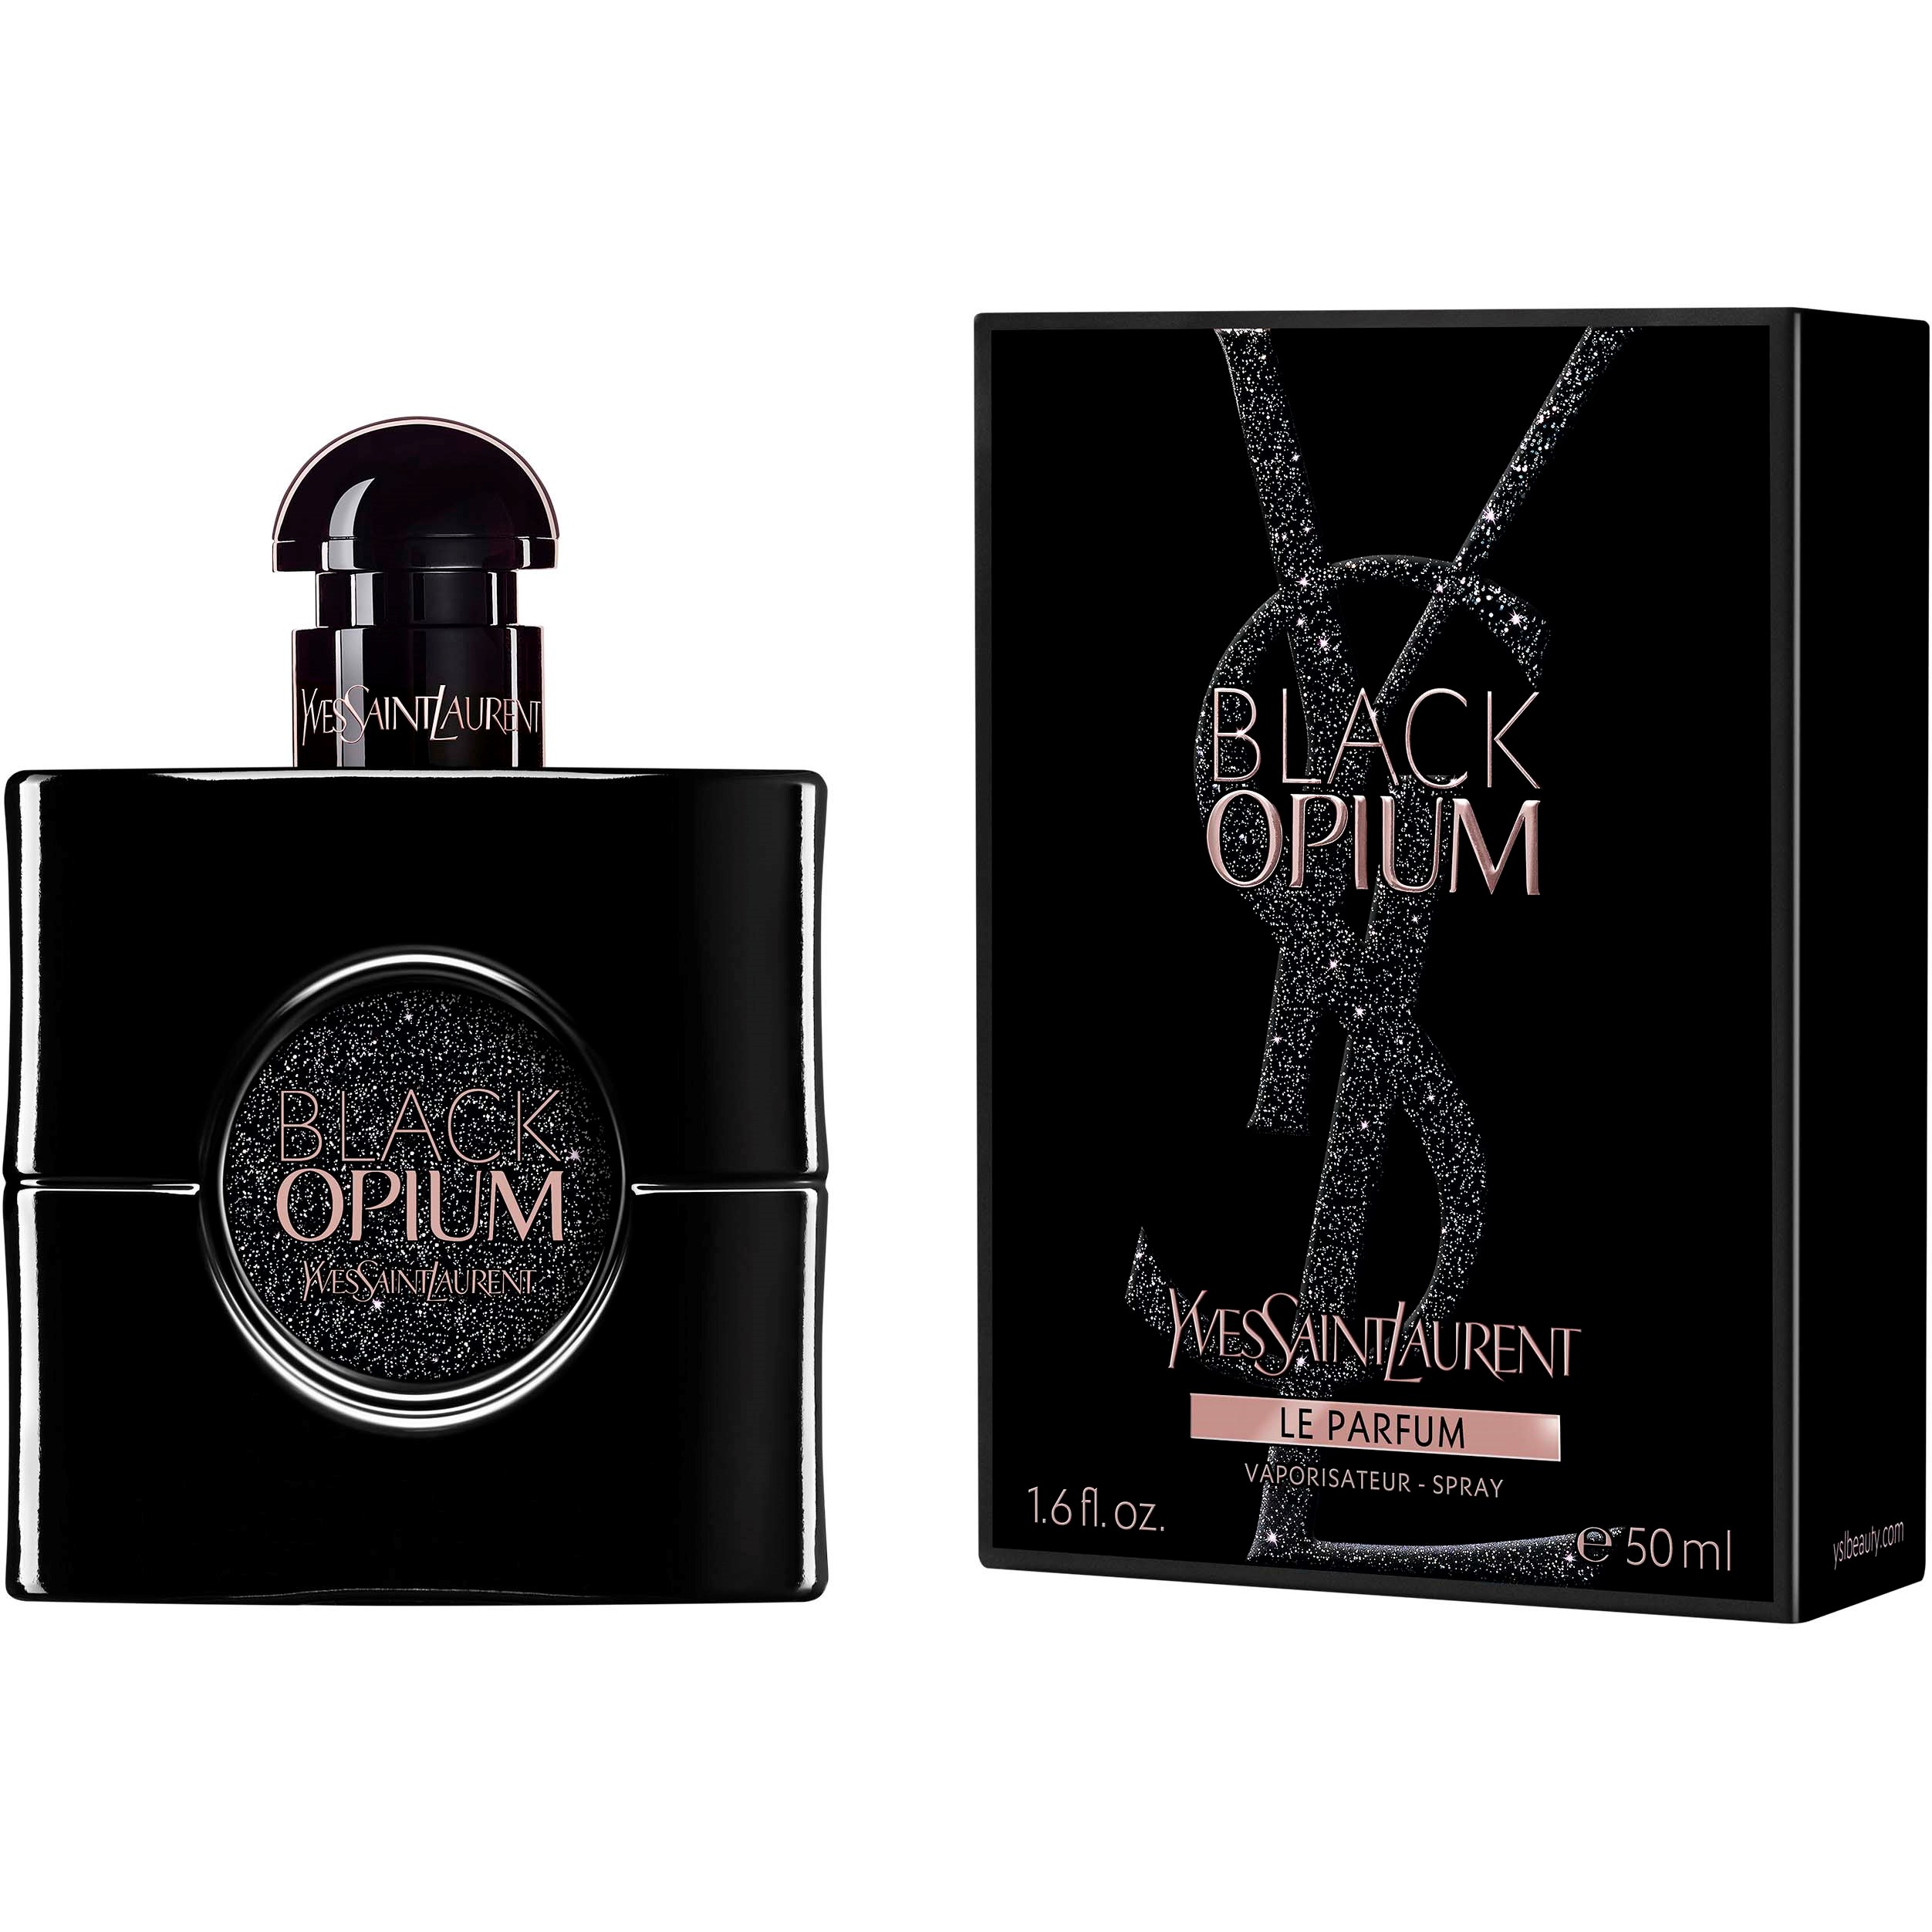 Bilde av Yves Saint Laurent Black Opium Le Parfum 50 Ml